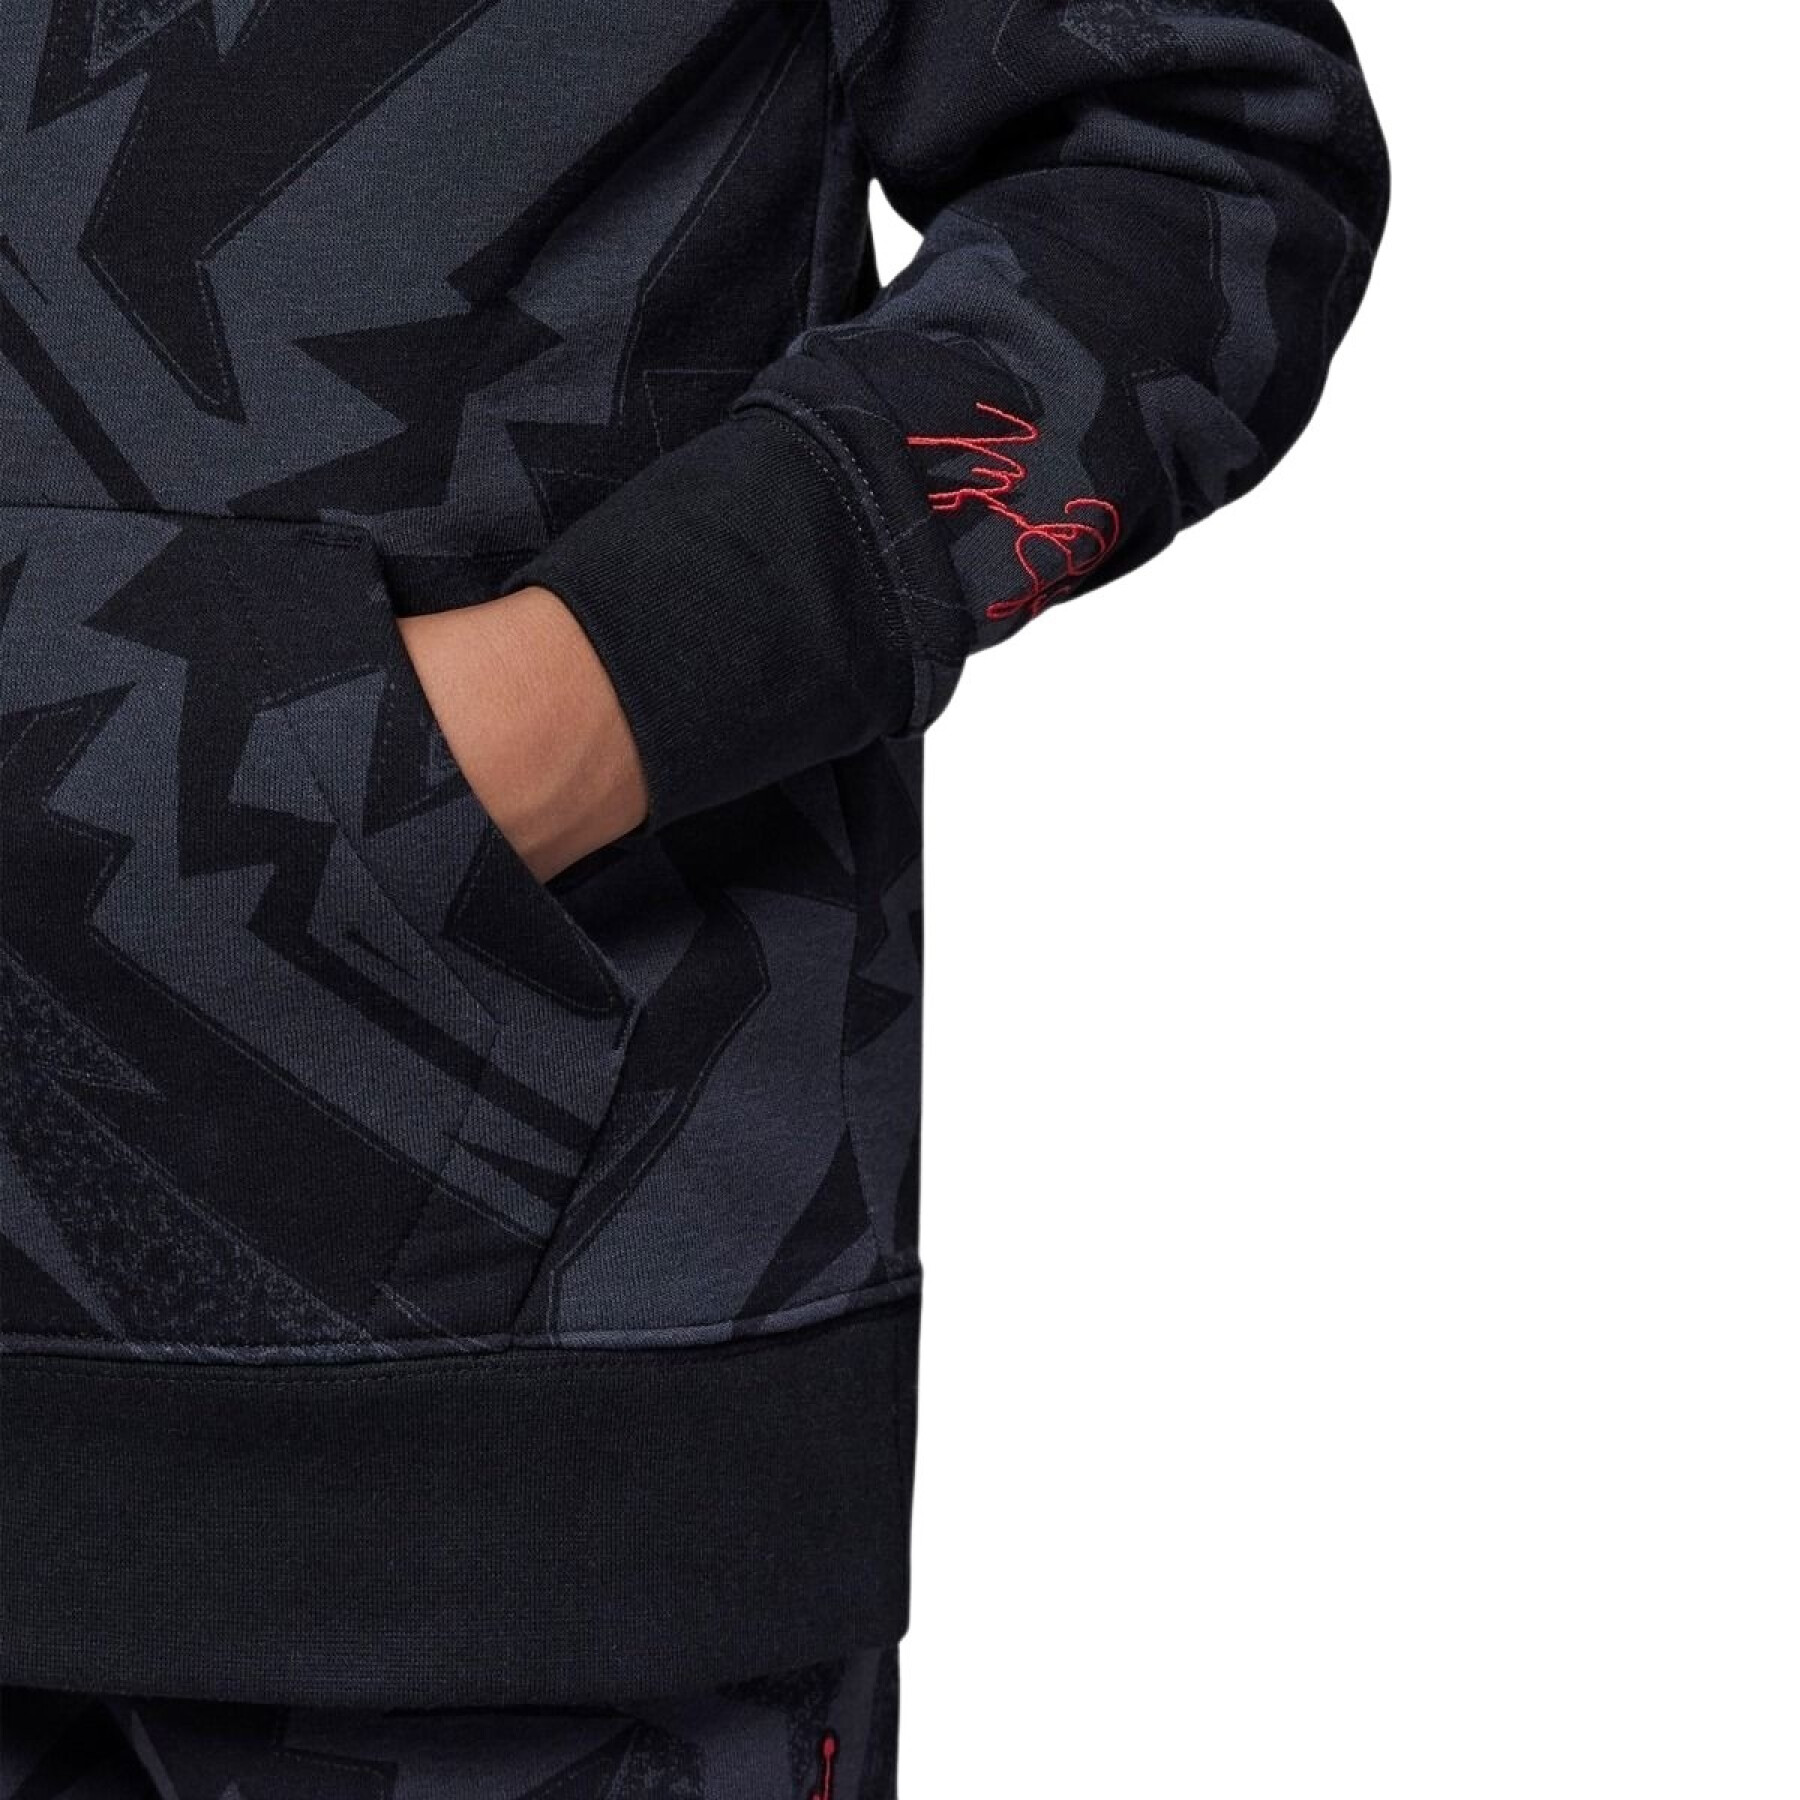 Junior Sweatshirt Jordan Essentials AOP Fleece PO